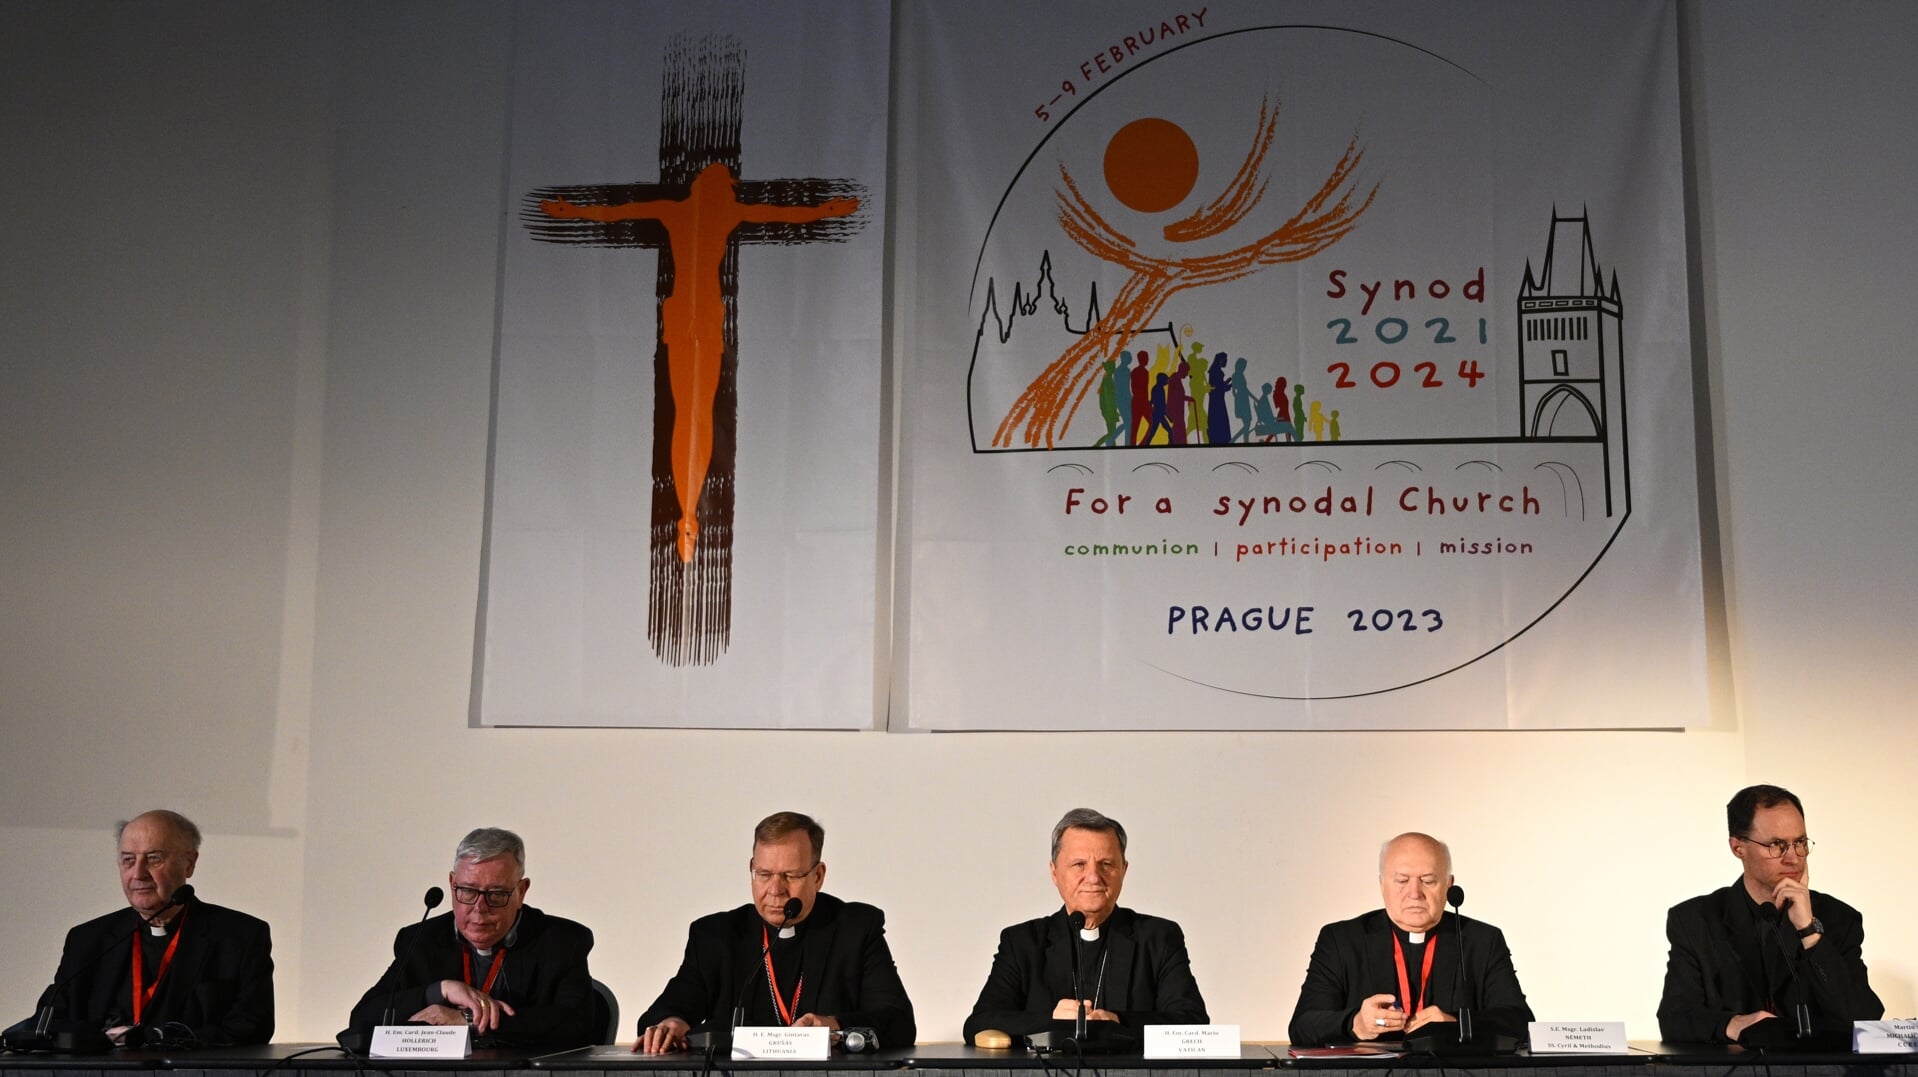 Tijdens de eerste dag van de Europese synode-ontmoeting zaten er slechts (mannelijke, celibataire) geestelijken achter de Praagse tafel. Daarop kwam vanuit de zaal en van verschillende nationale delegaties kritiek. 